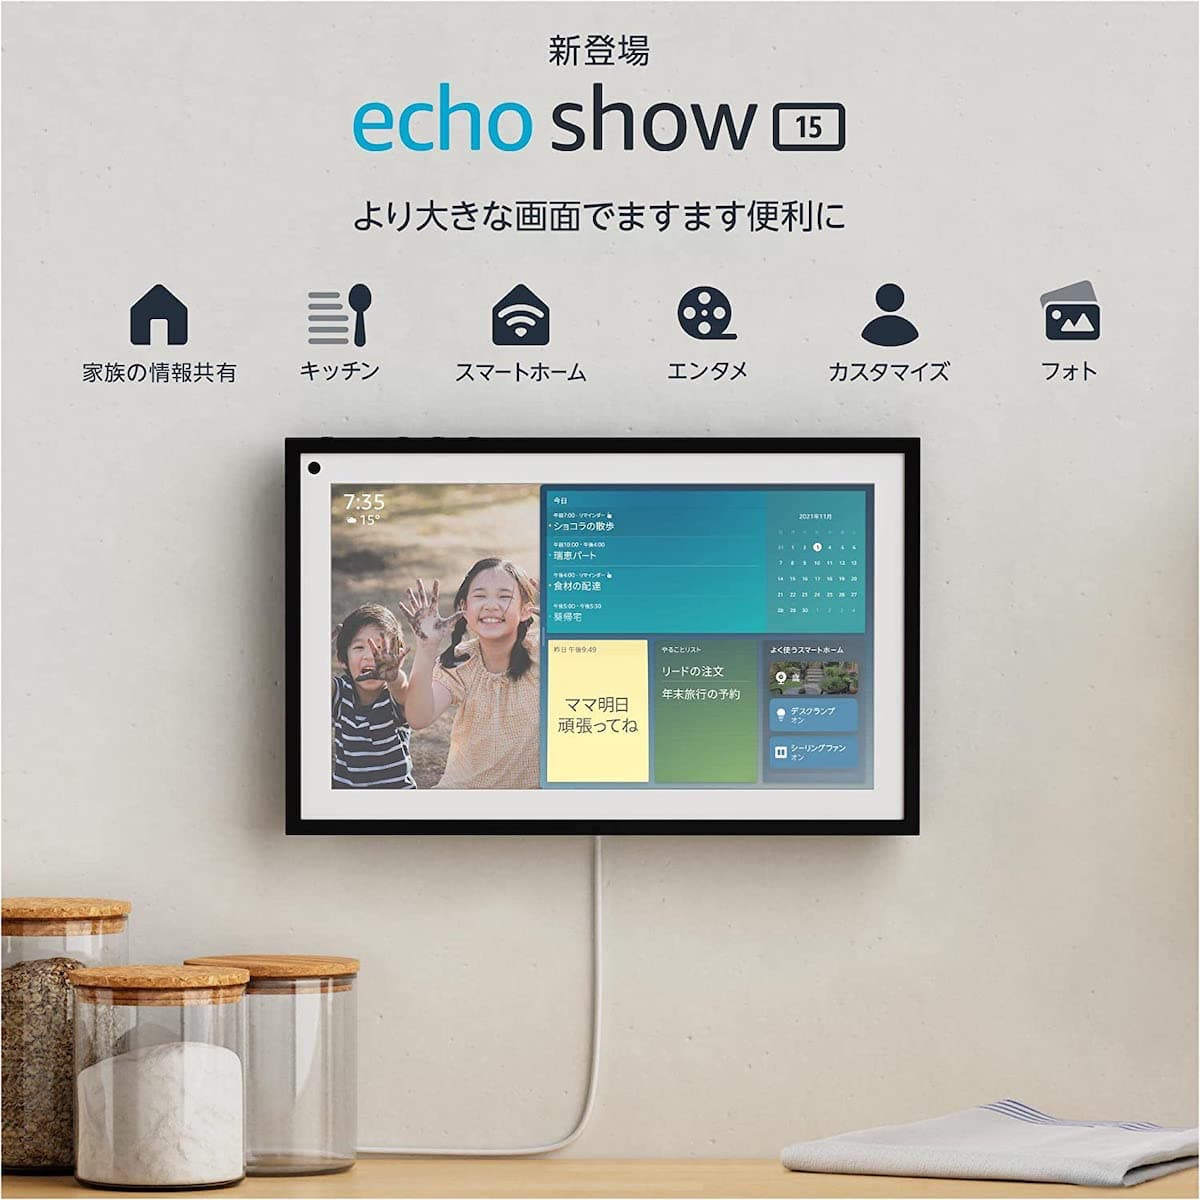 Echo Show 15【家族の予定を共有などの新機能を使いたい人におすすめ】